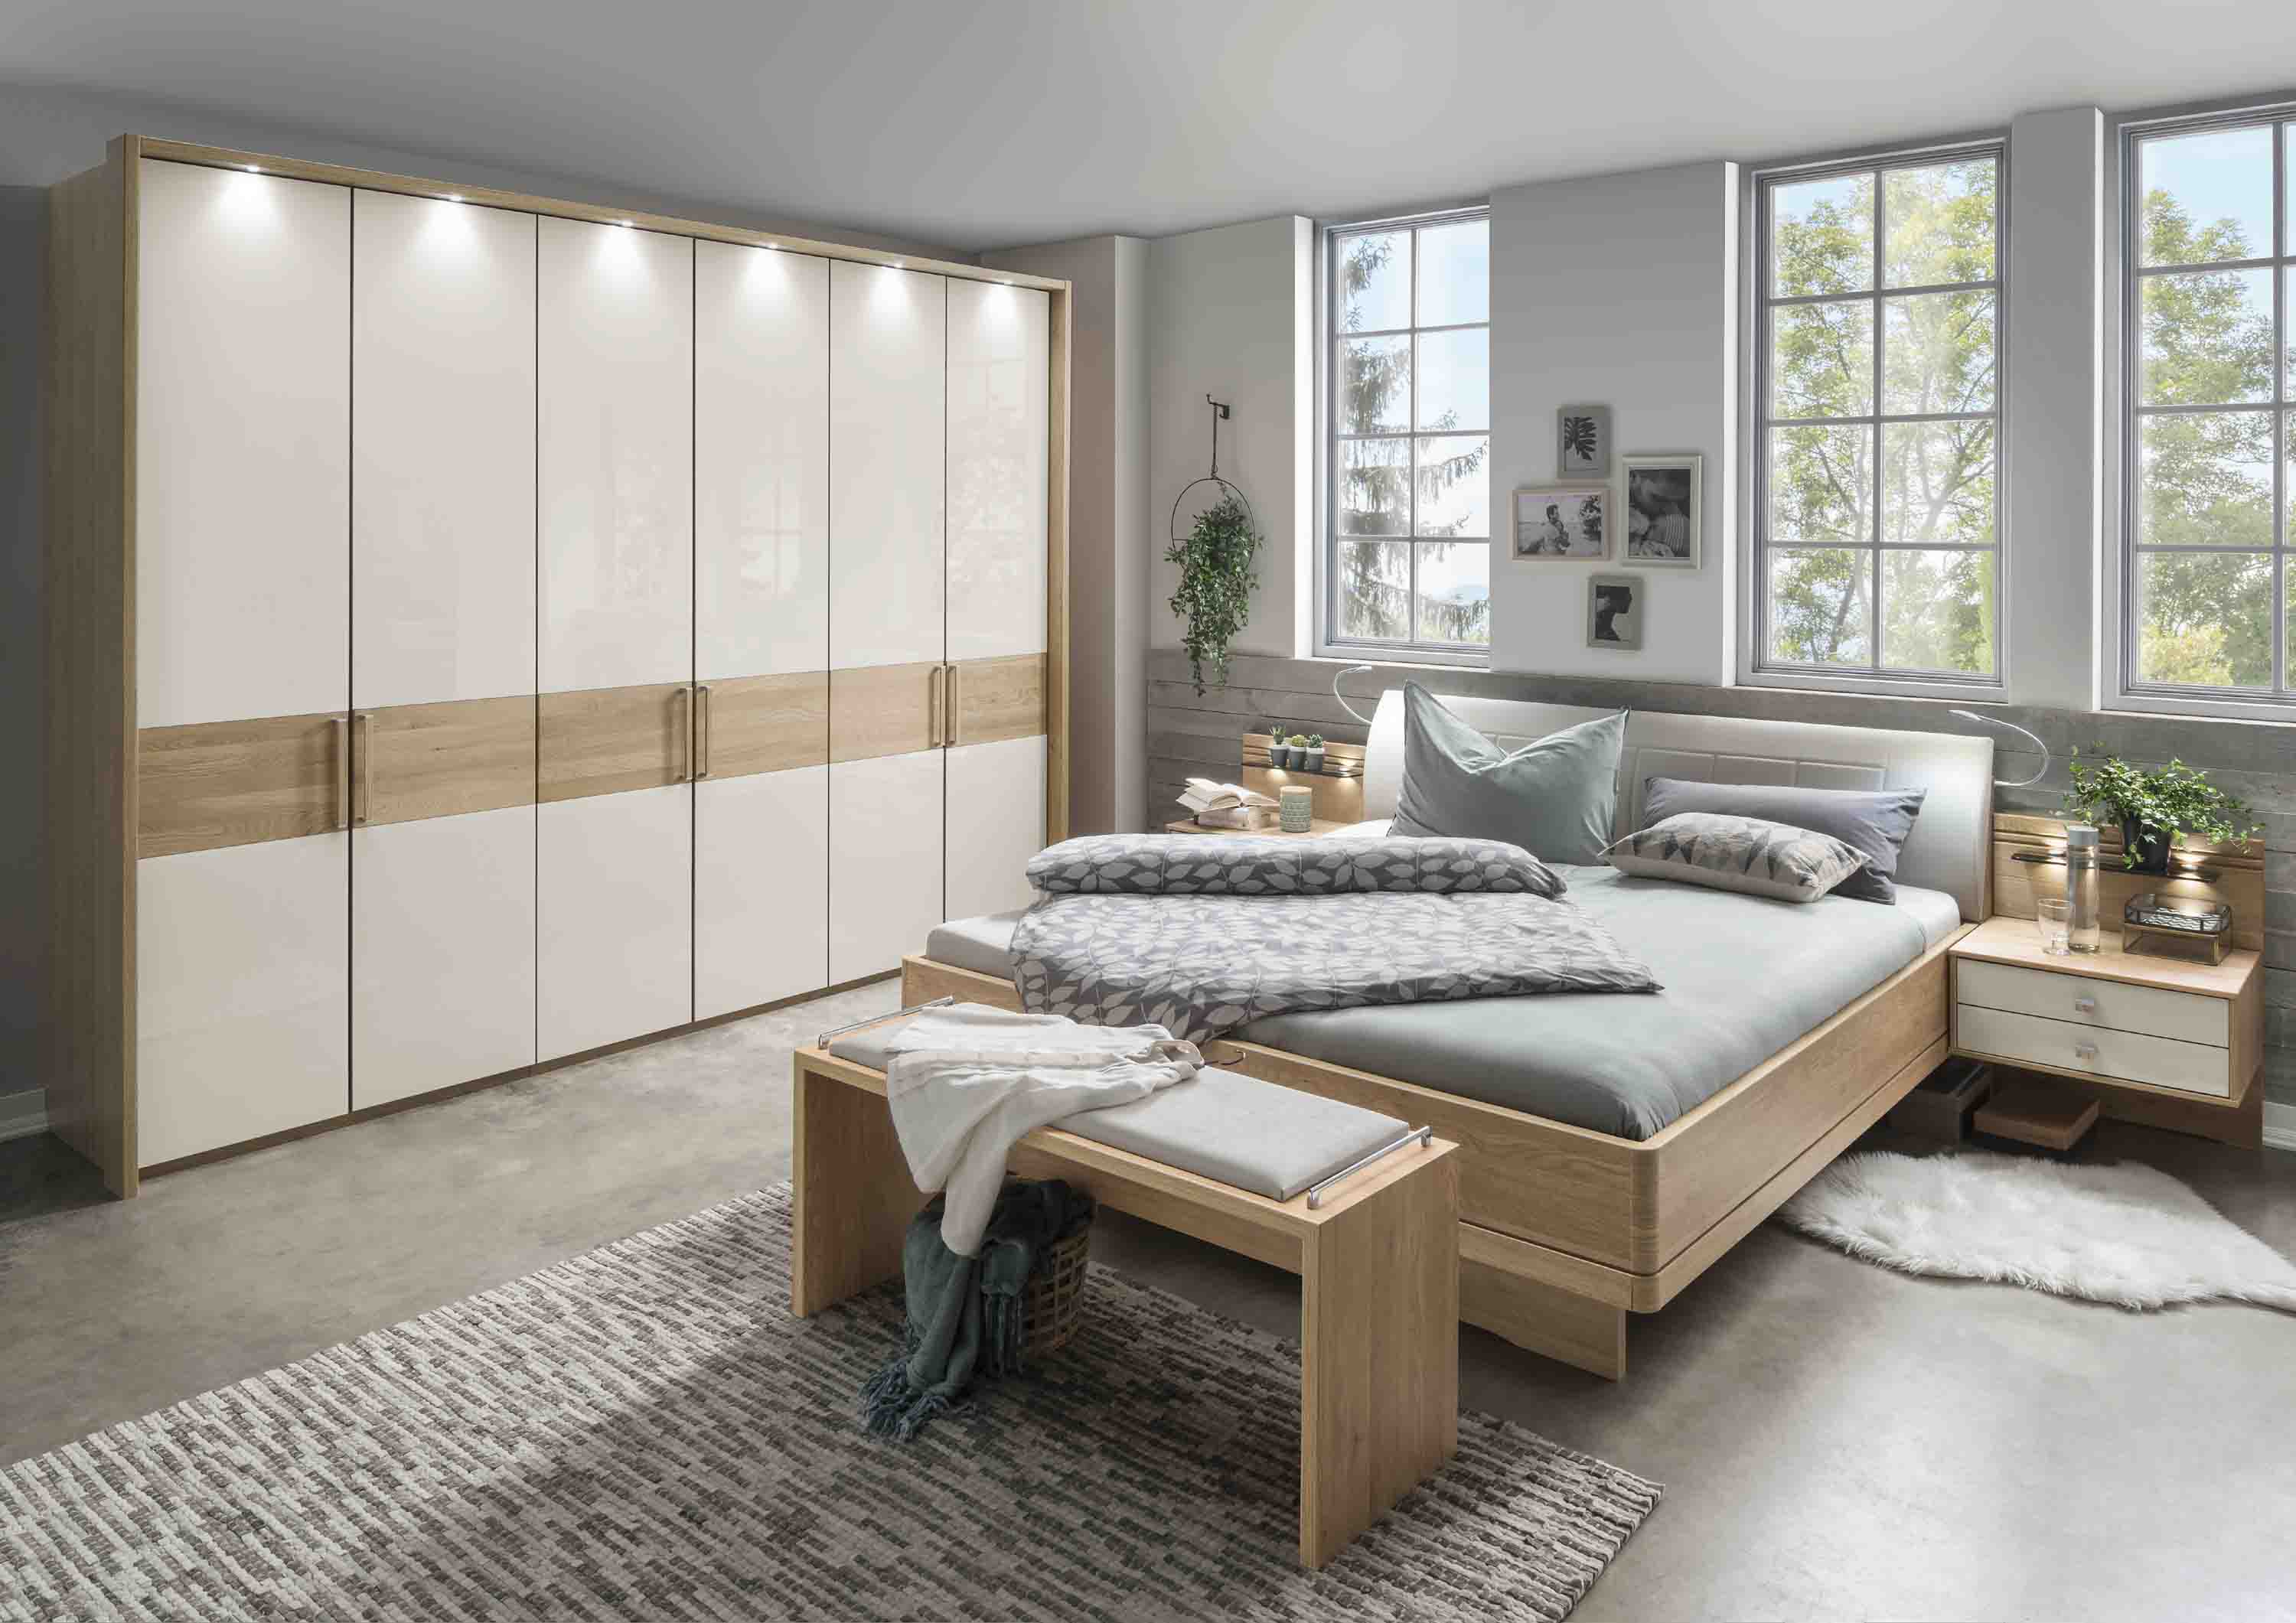 Schlafzimmer Kiruna in Eiche teilmassiv günstig, Wiemann | Massiva | Kleiderschränke